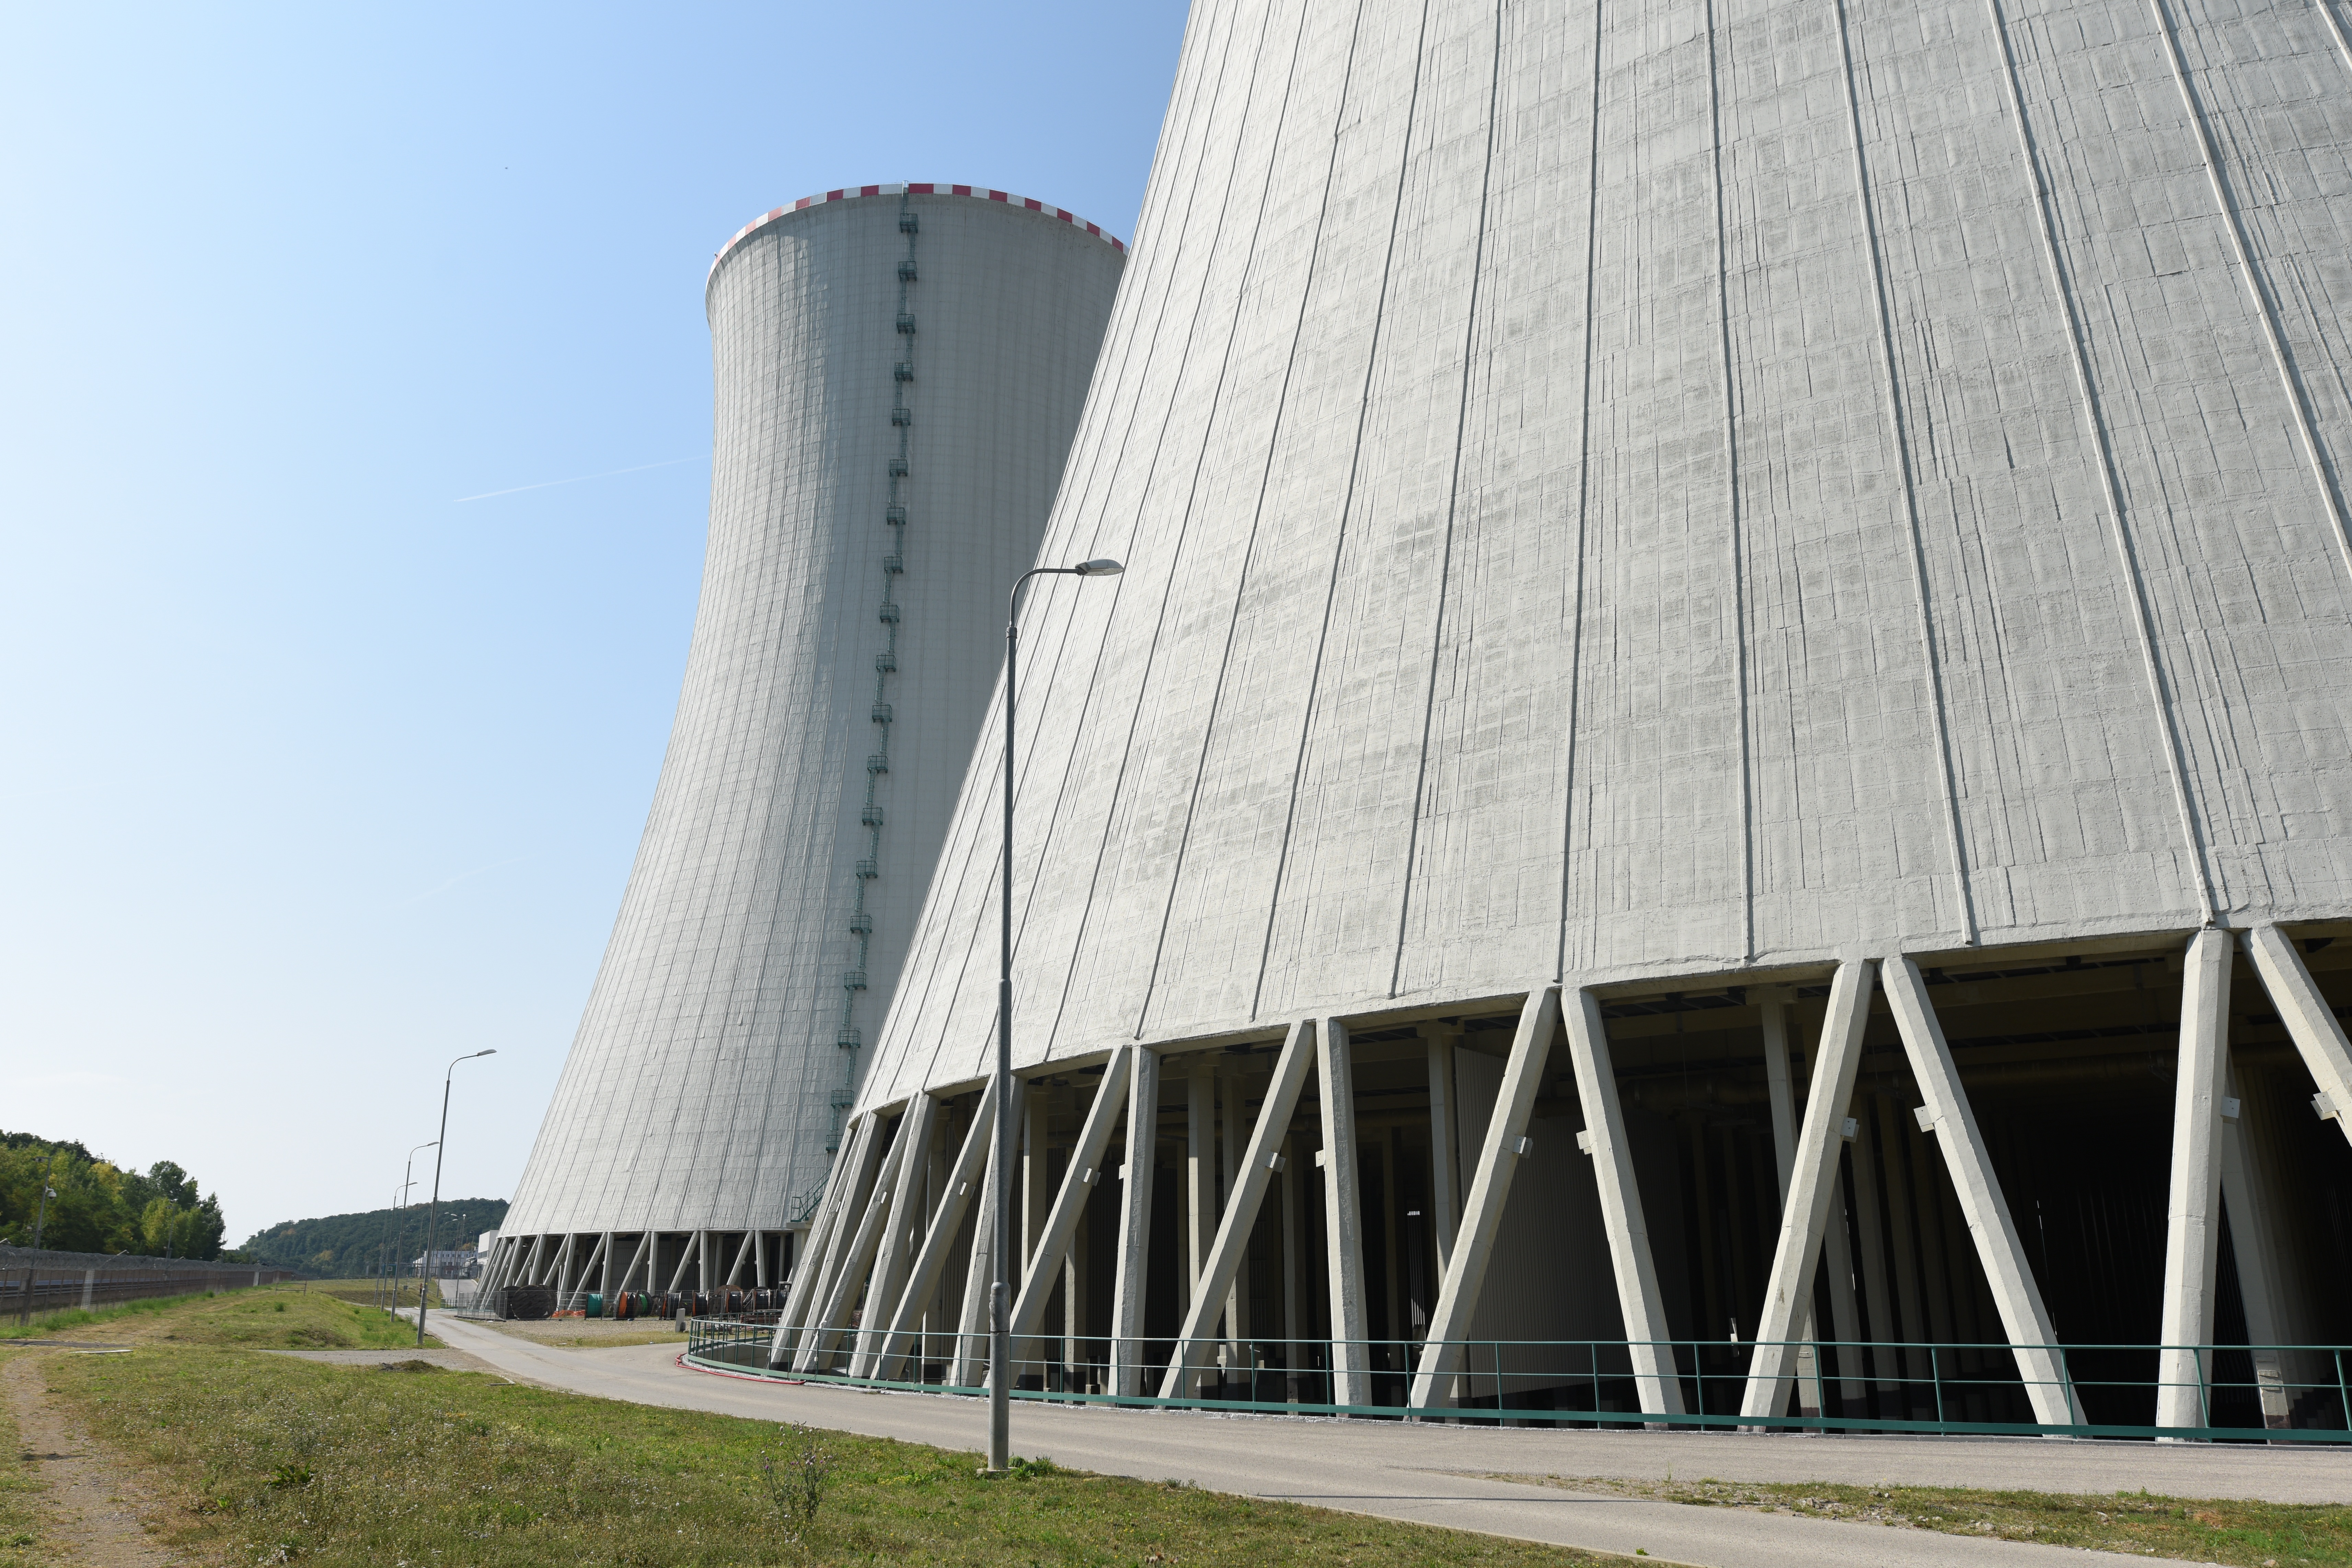 Szlovákiában egyes források szerint a teljes villamosenergia-fogyasztás körülbelül 53 százaléka származik atomreaktorokból (TASR-felvétel)